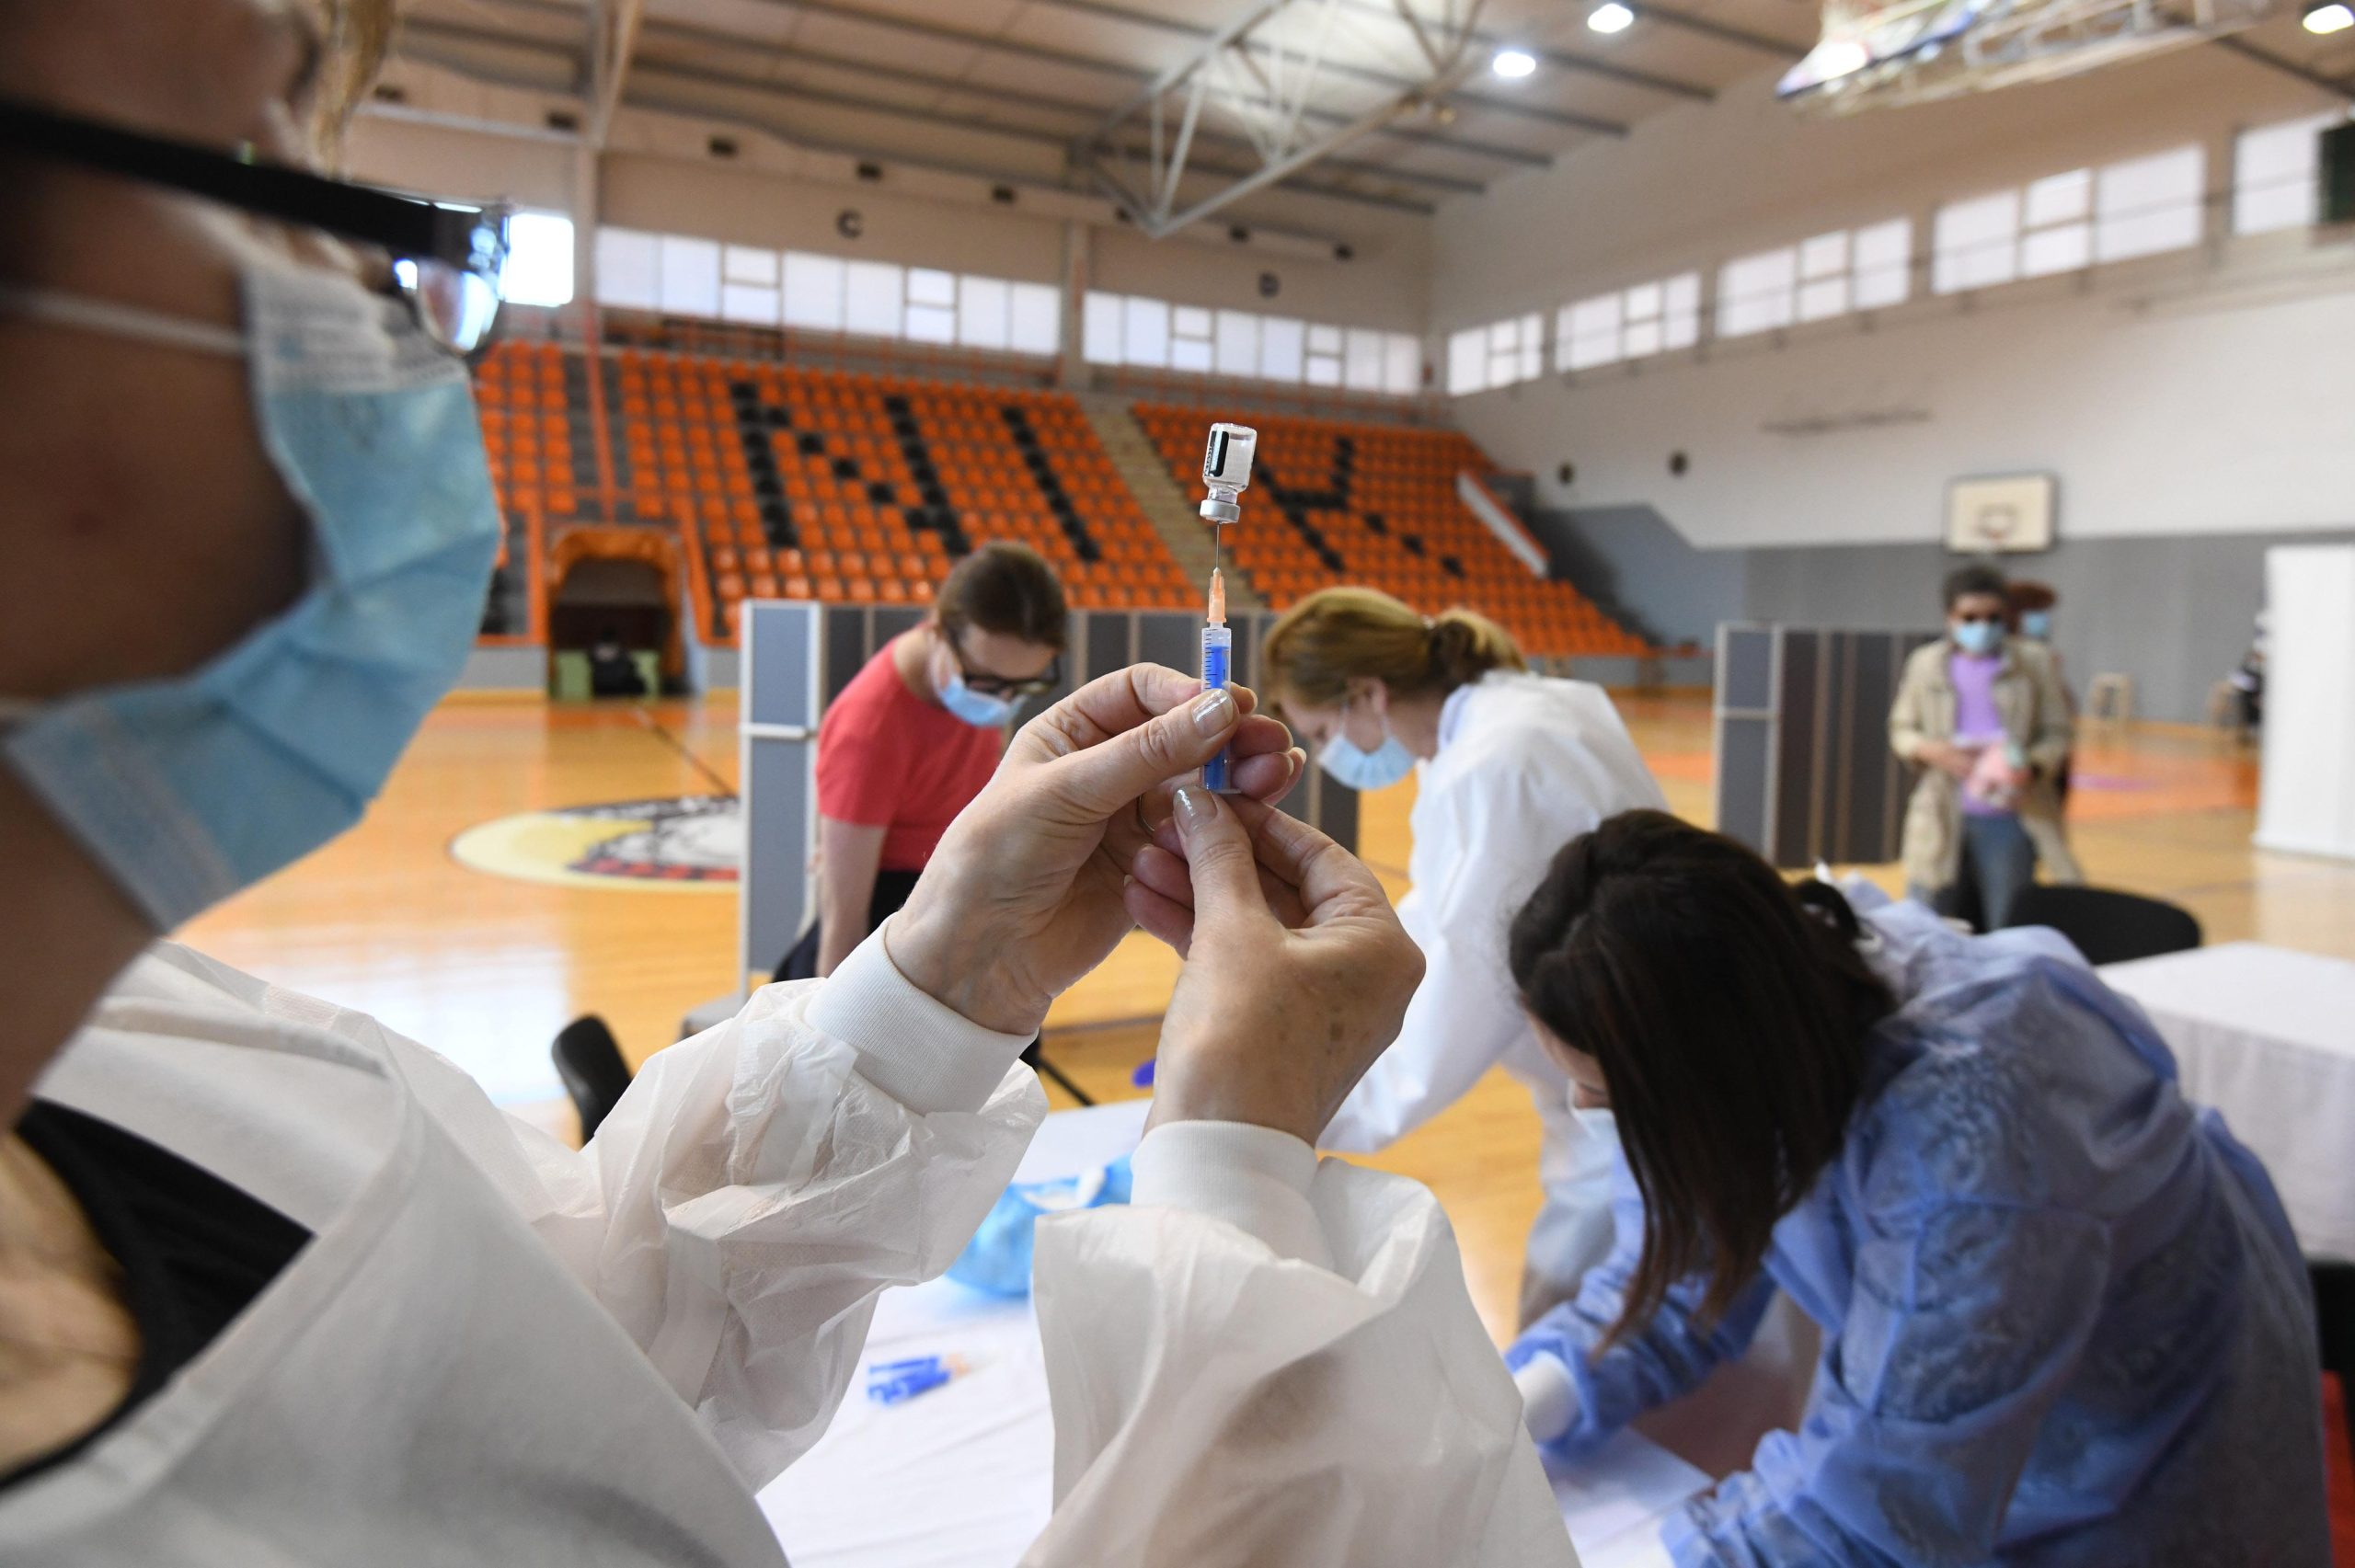 06.05.2021., Sibenik - U sportskoj dvorani na Baldekinu provodi se masovno cijepljenje sa svim vrstama cijepiva. Photo: Hrvoje Jelavic/PIXSELL